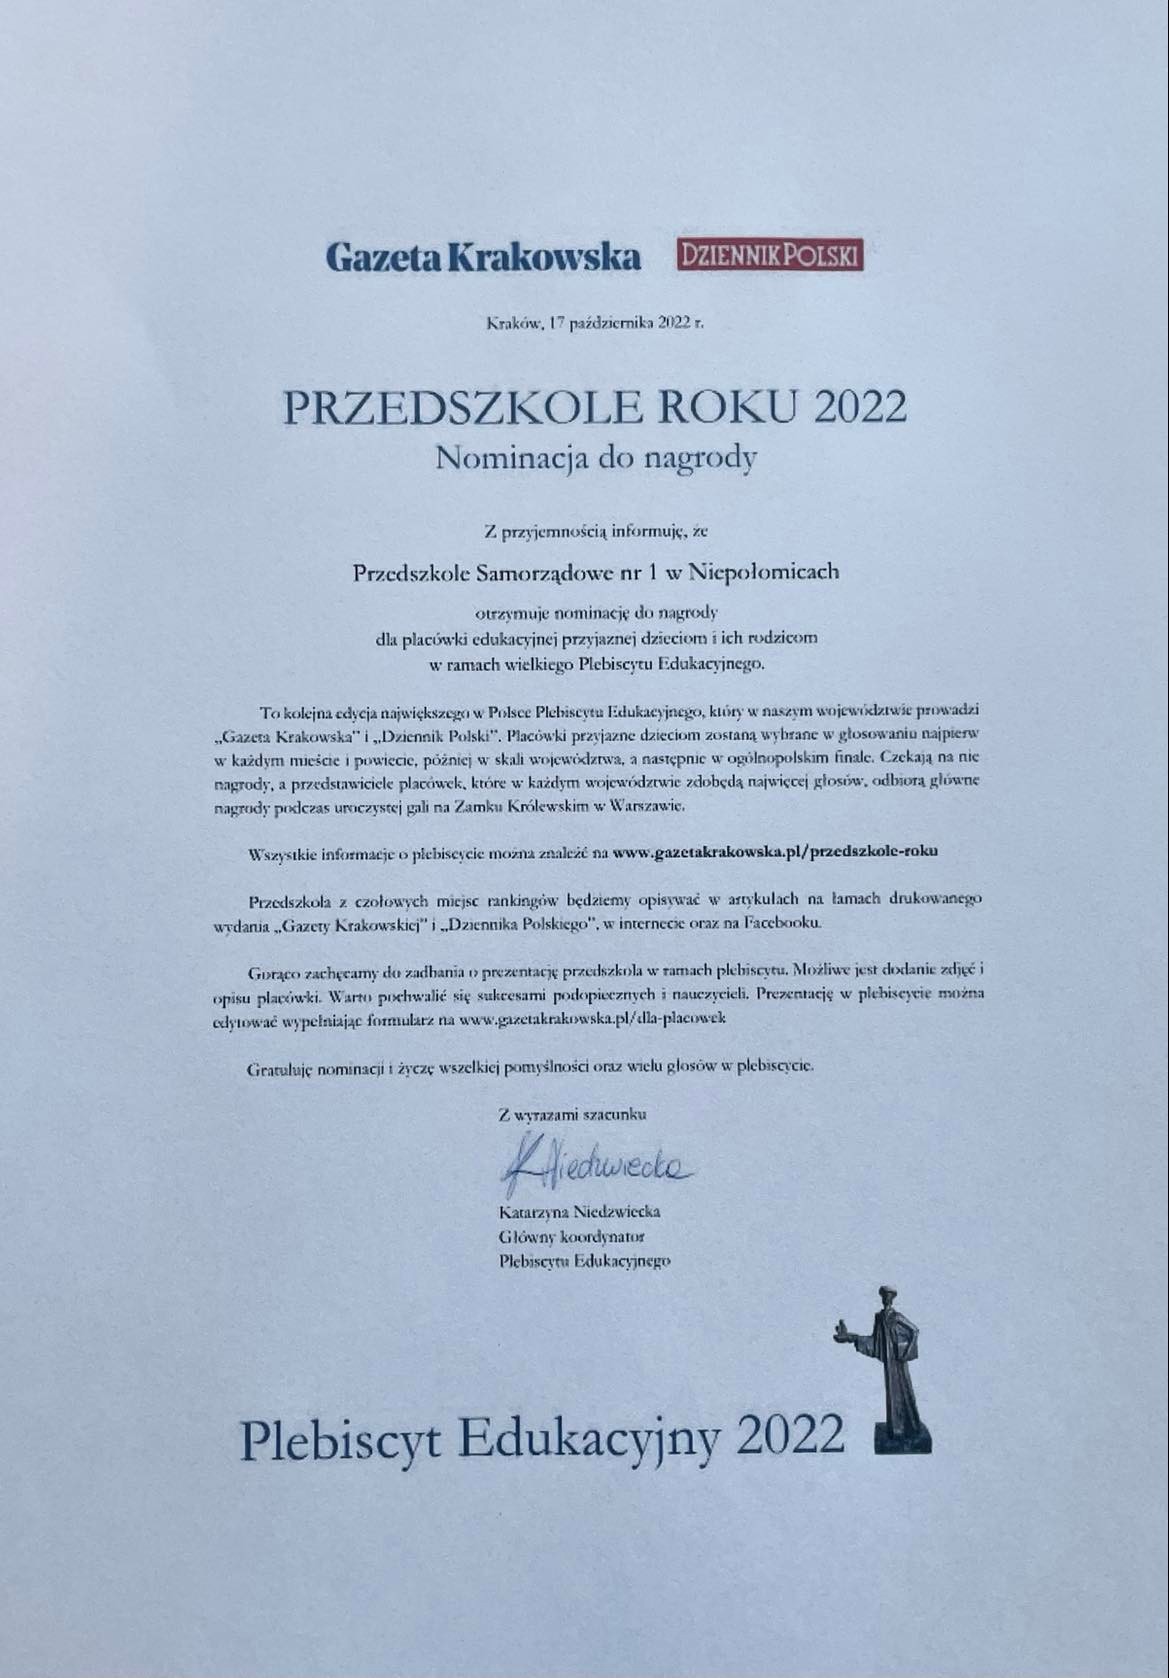 Nominacja do nagrody  Przedszkole roku 2022 w Plebiscycie Edukacyjnym post thumbnail